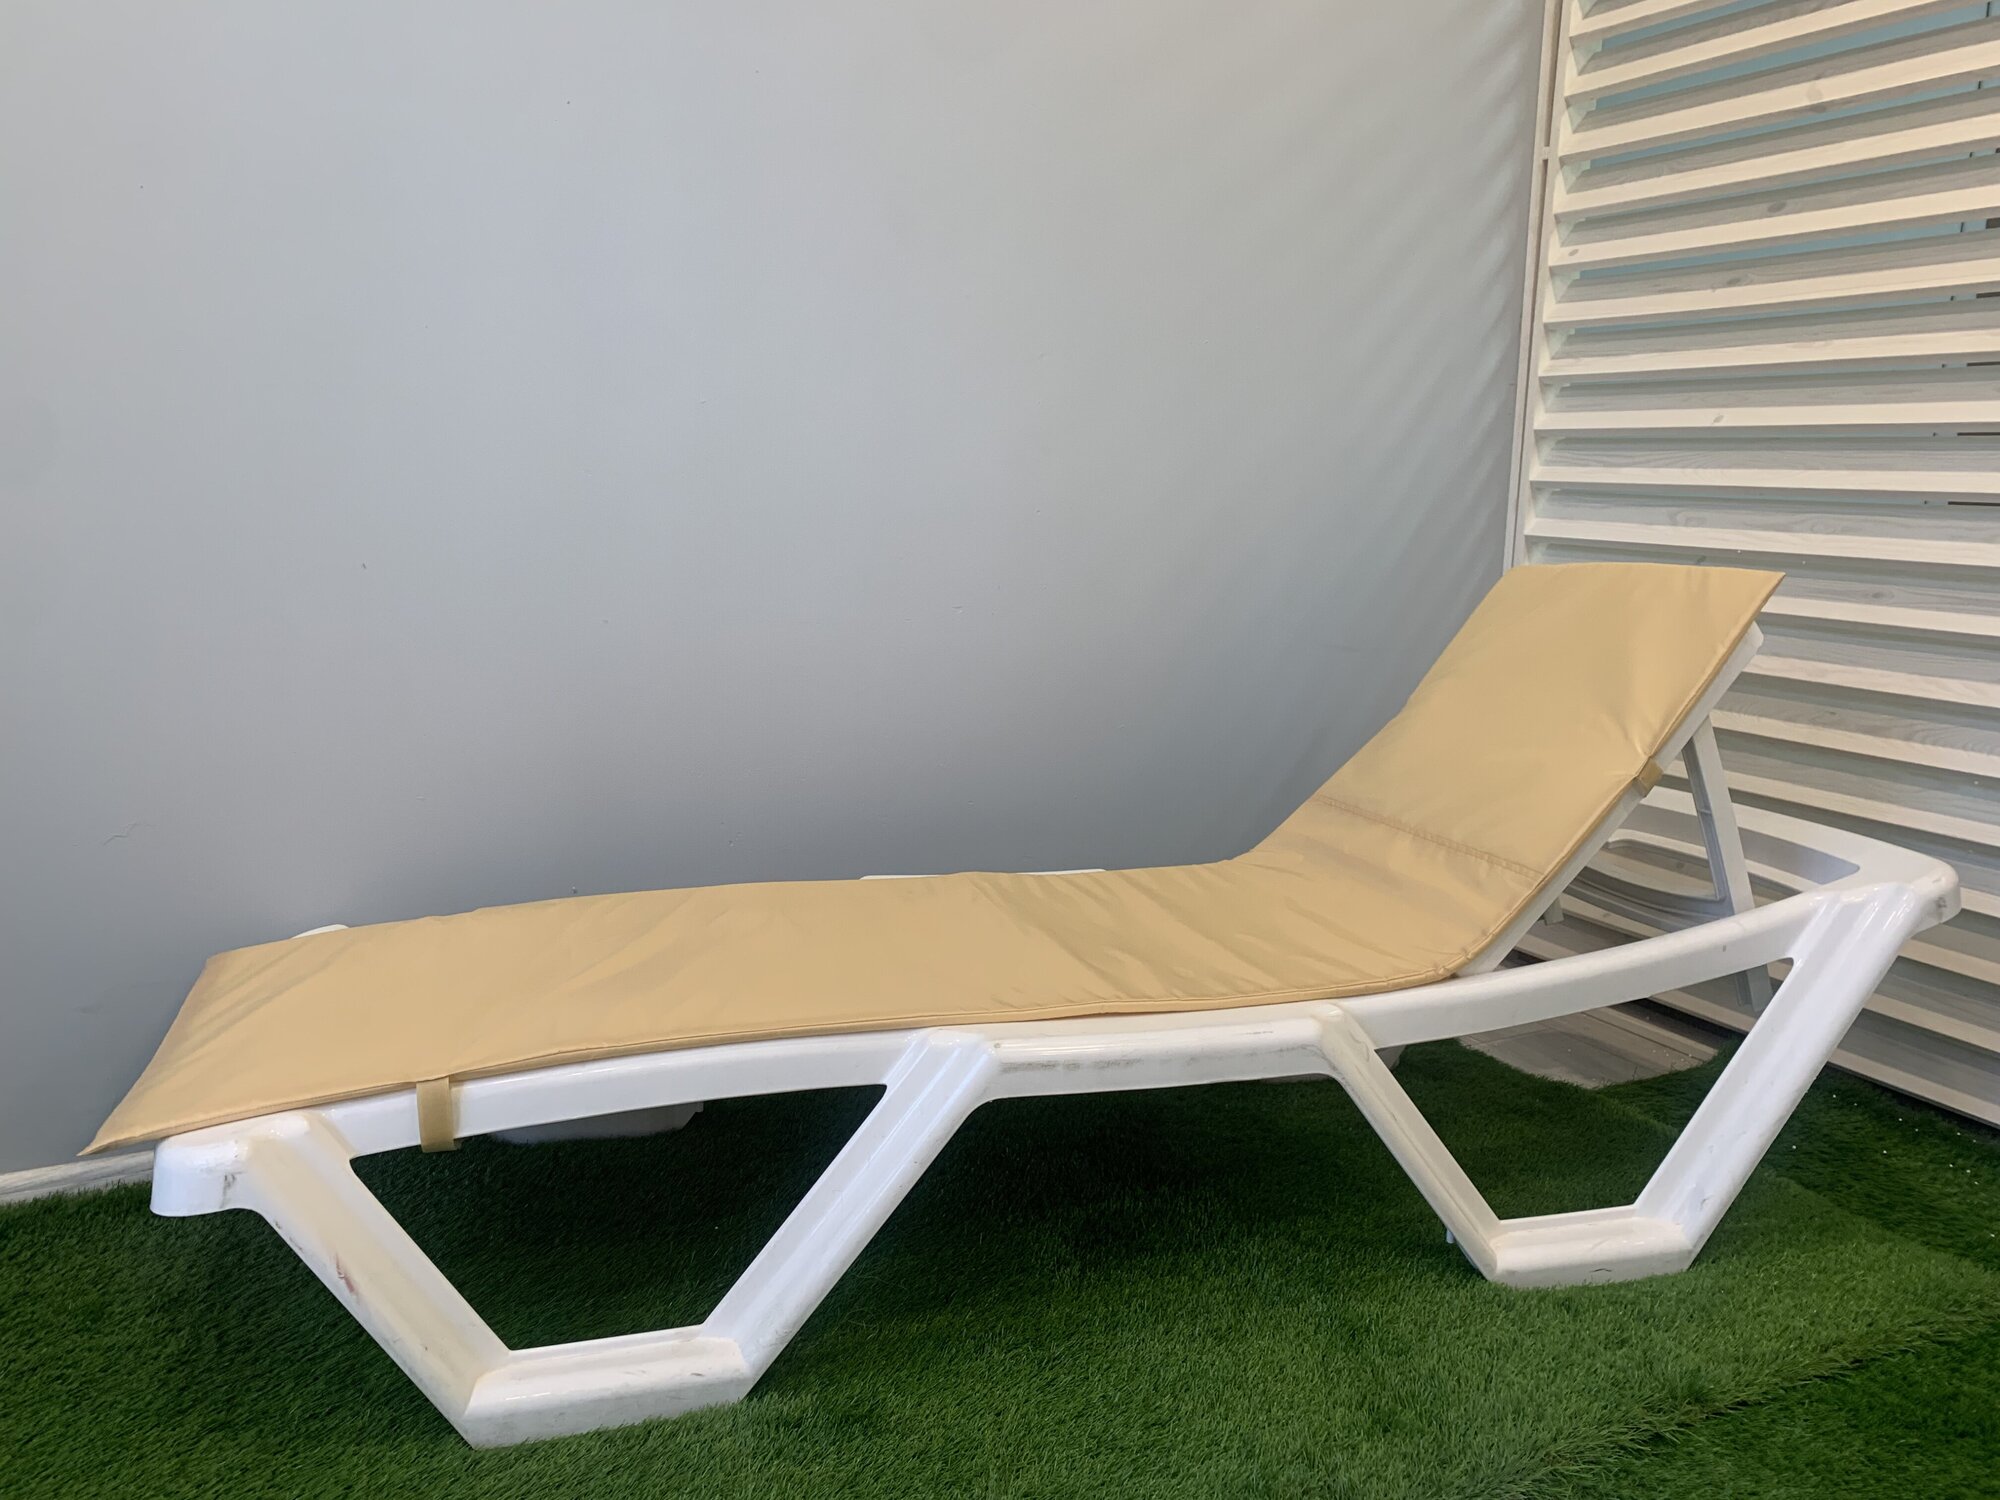 Матрас для шезлонга и лежака имбирный, коврик для пляжа, 180*50*1 см, чудо кресло, непромокаемый, Оксфорд, односекционный - фотография № 12